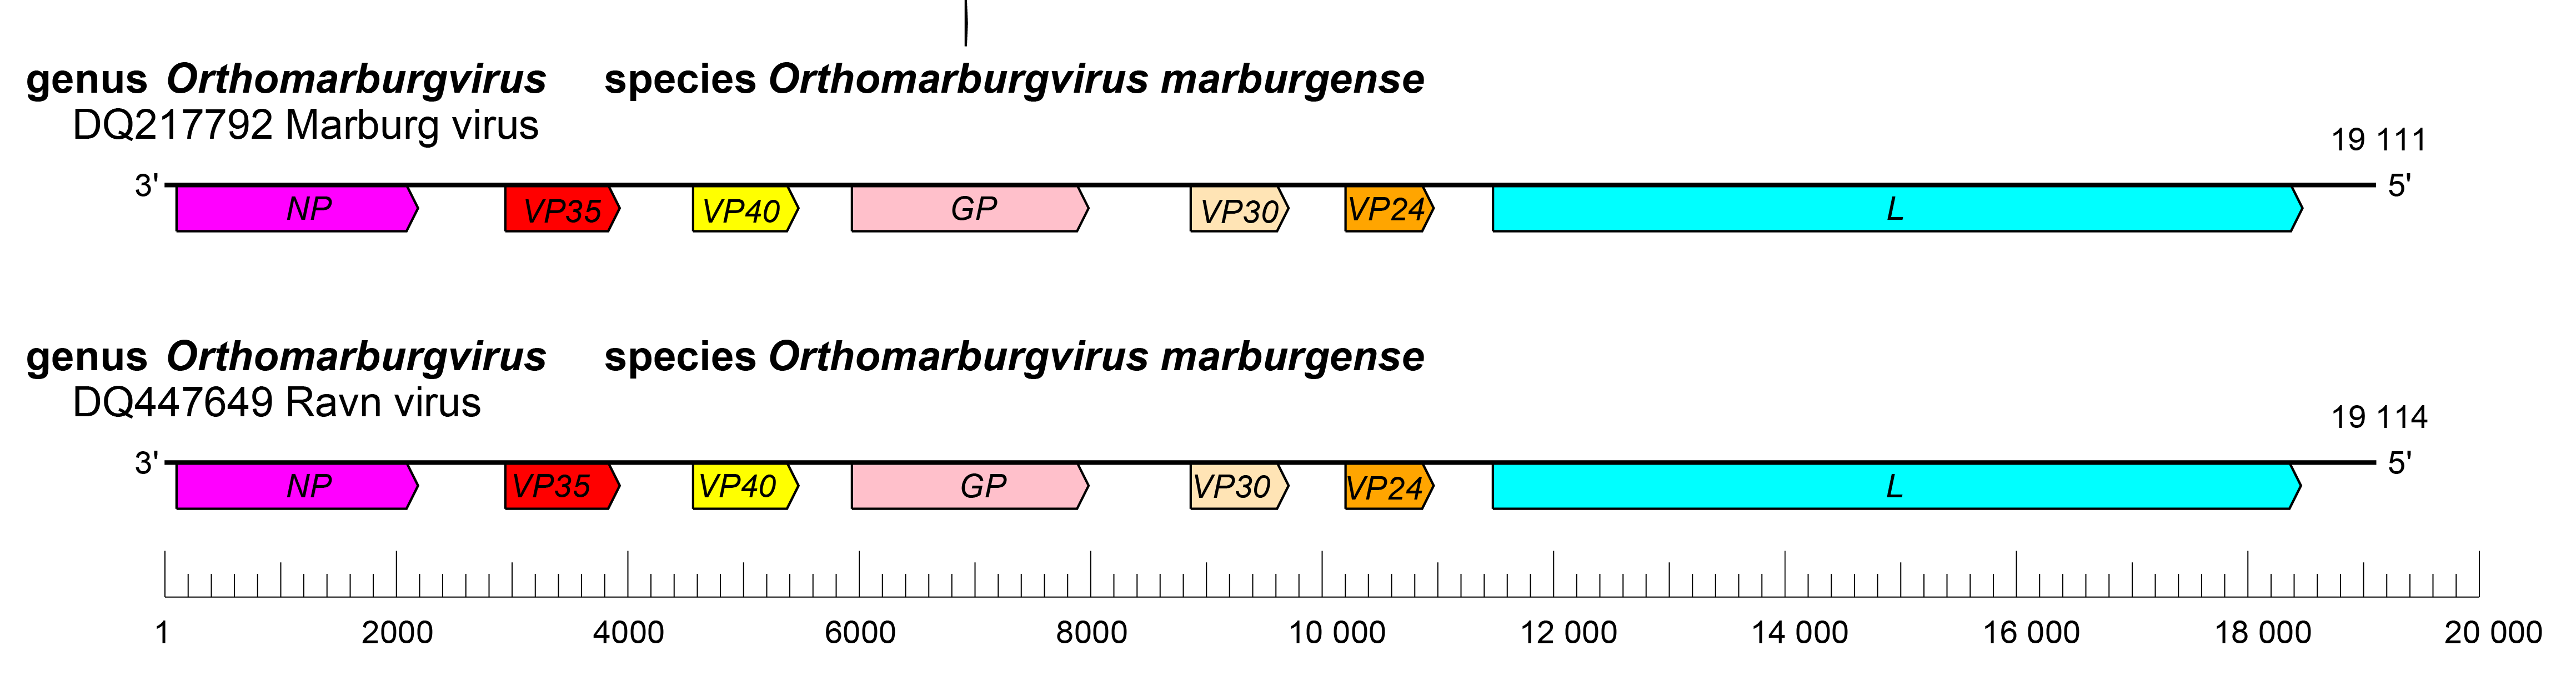 Orthomarburgvirus genome